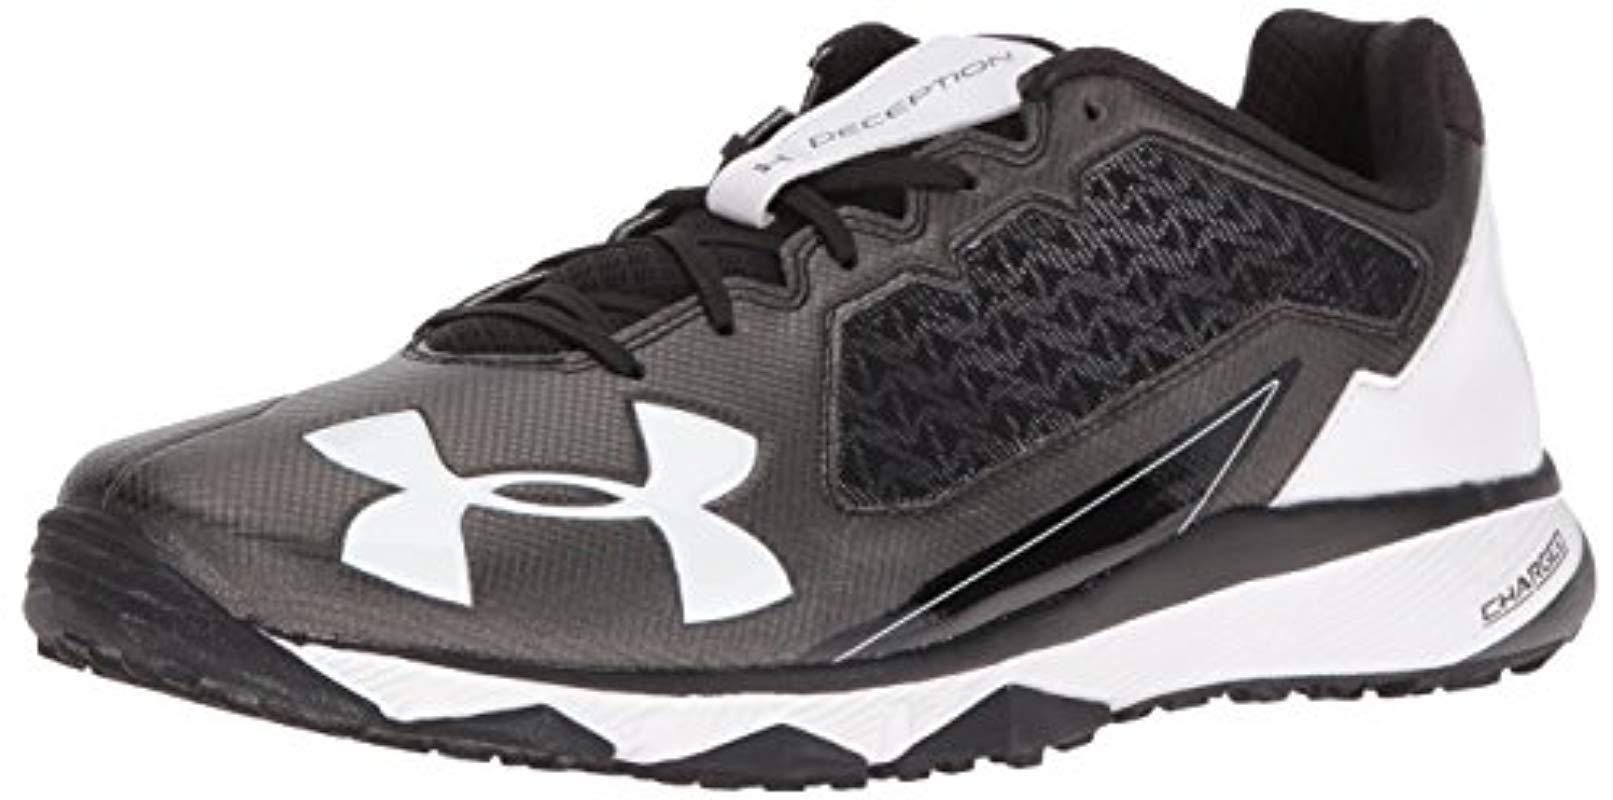 Details about   Under Armour Men's Deception Blue/white Baseball Trainer Shoes Size 16 